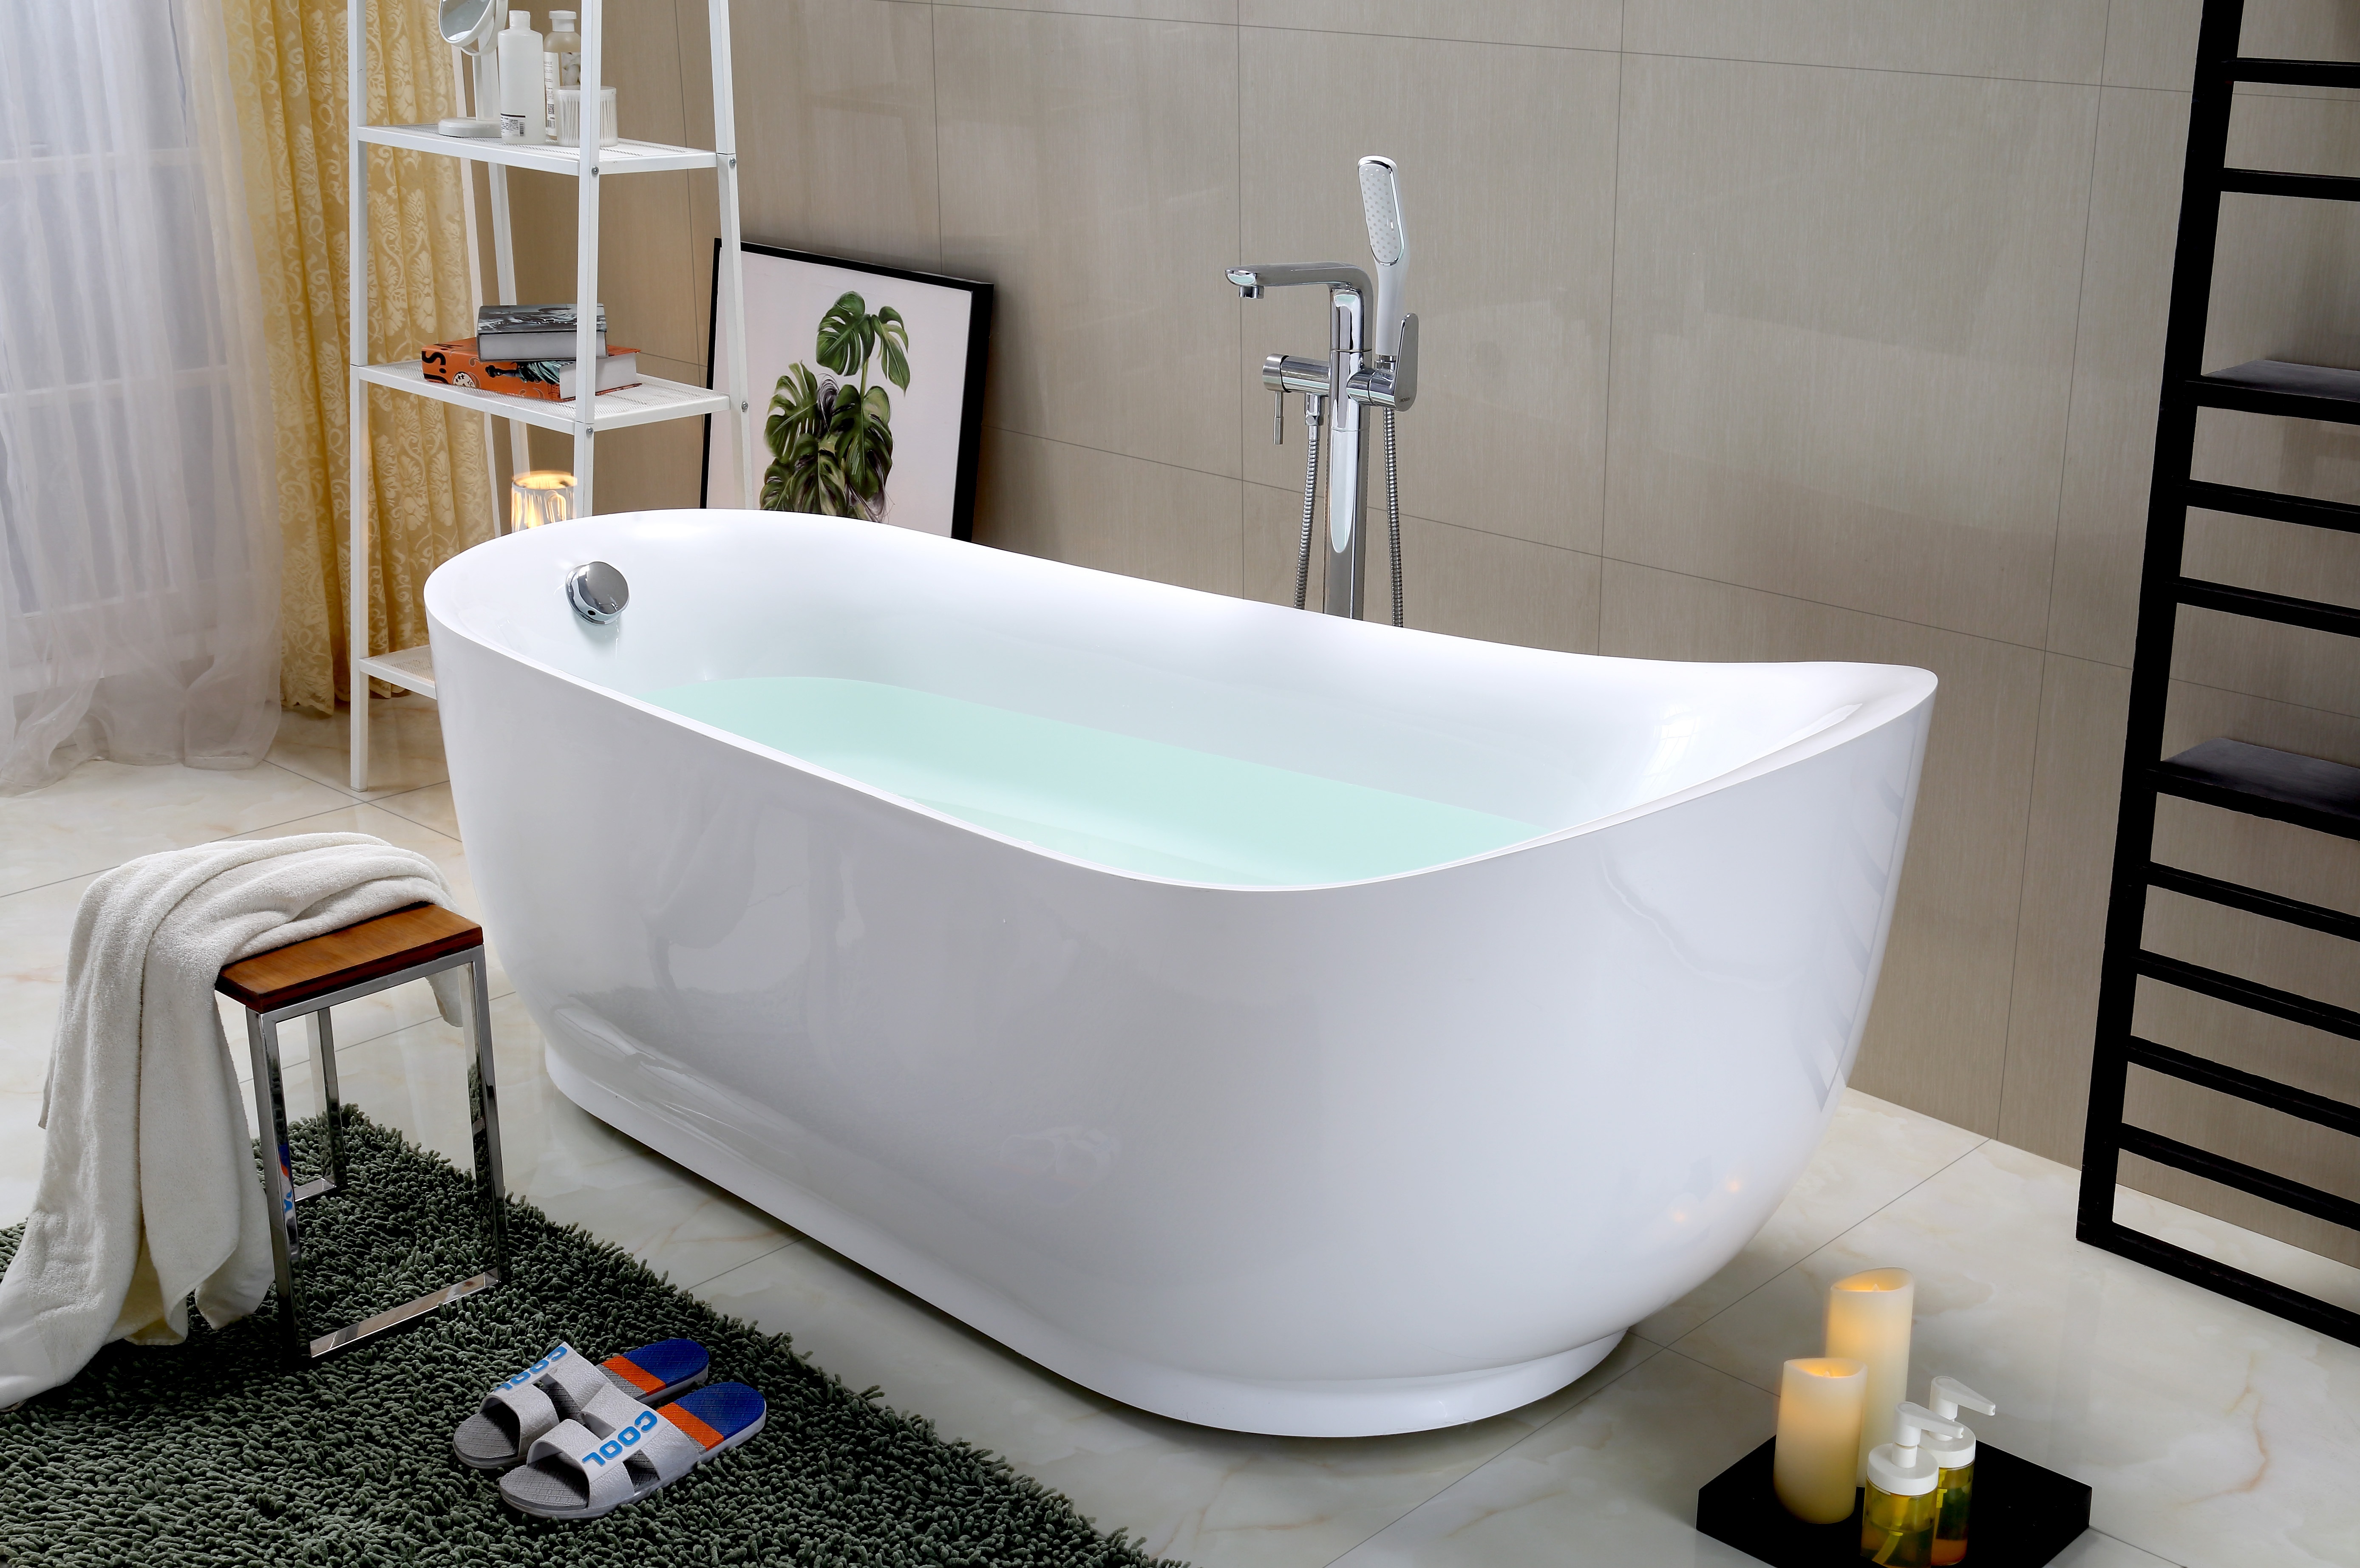 欧式亚克力浴缸卫浴厂家直销新款独立浴缸欧式亚克力浴缸家居SPA双人浴盆